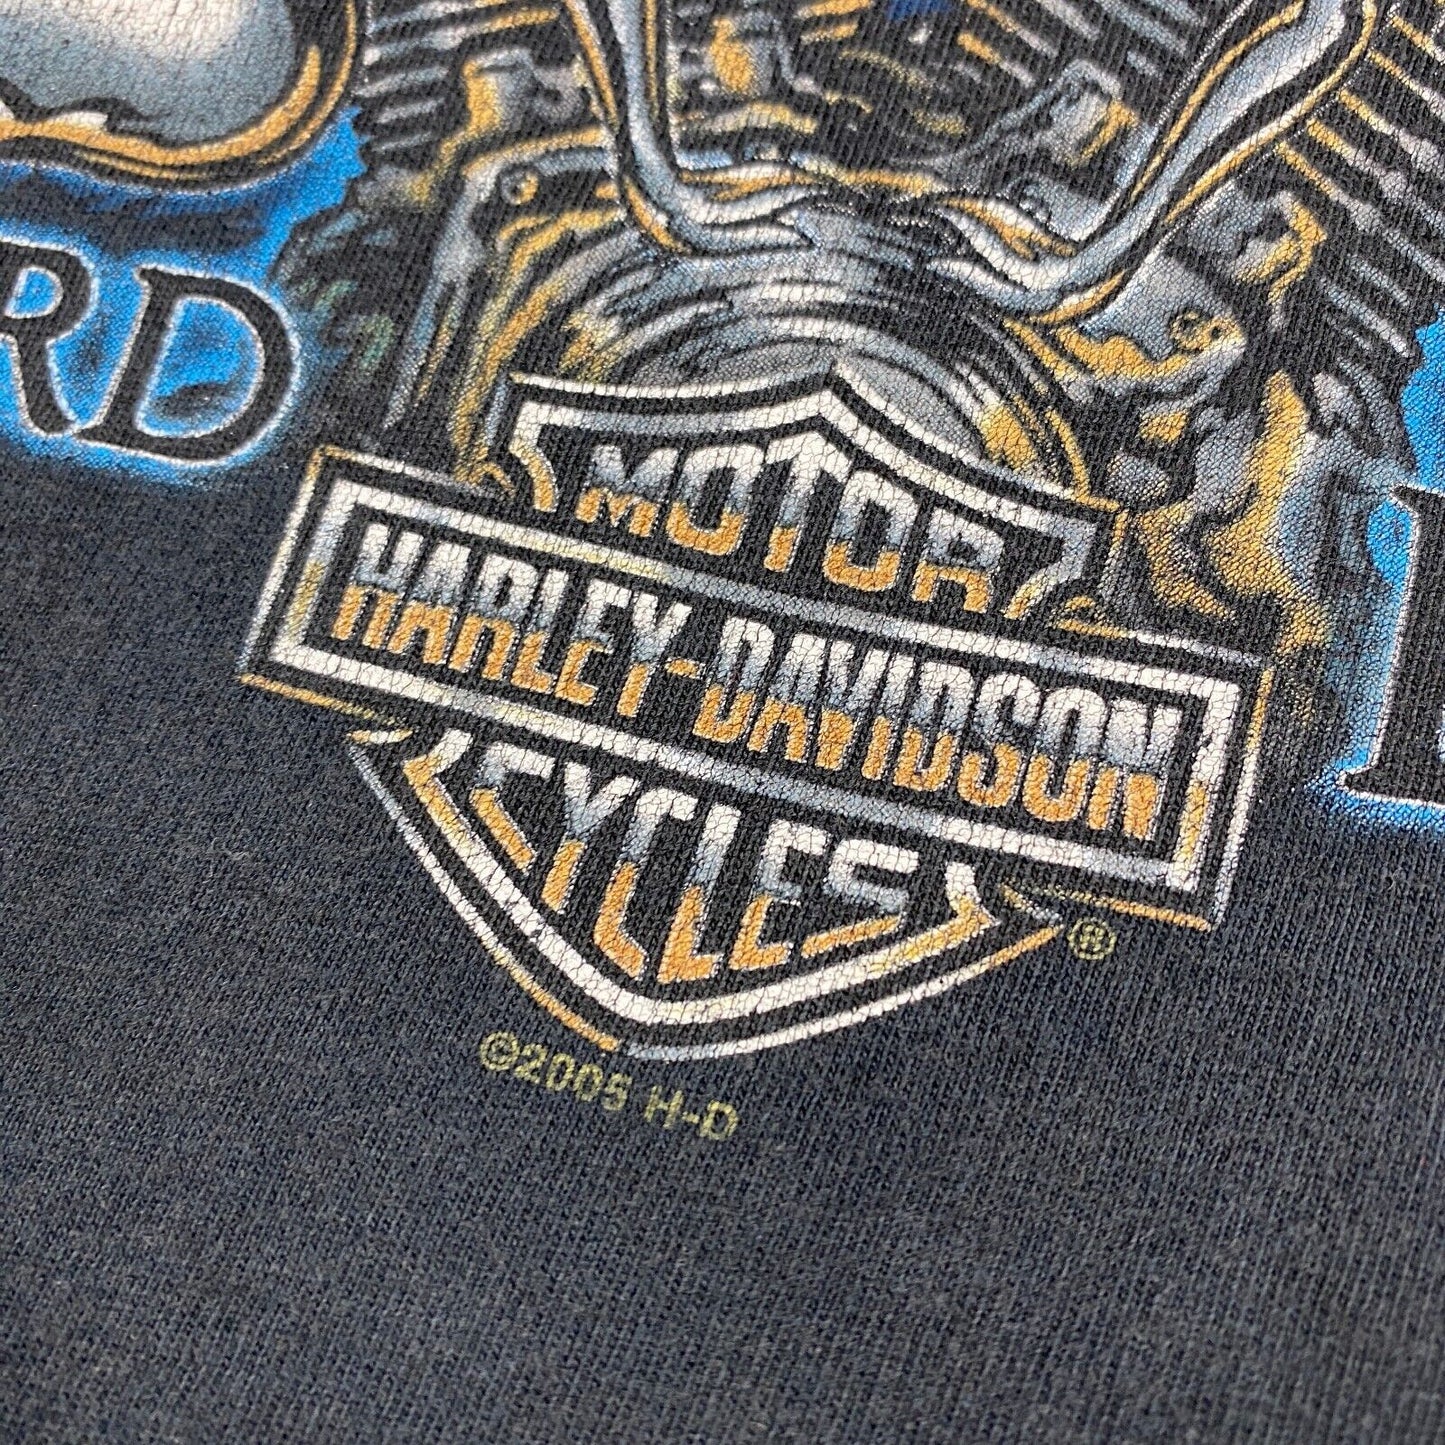 VINTAGE Harley Davidson Ride Hard Live Fast Biker T-Shirt sz XL Men